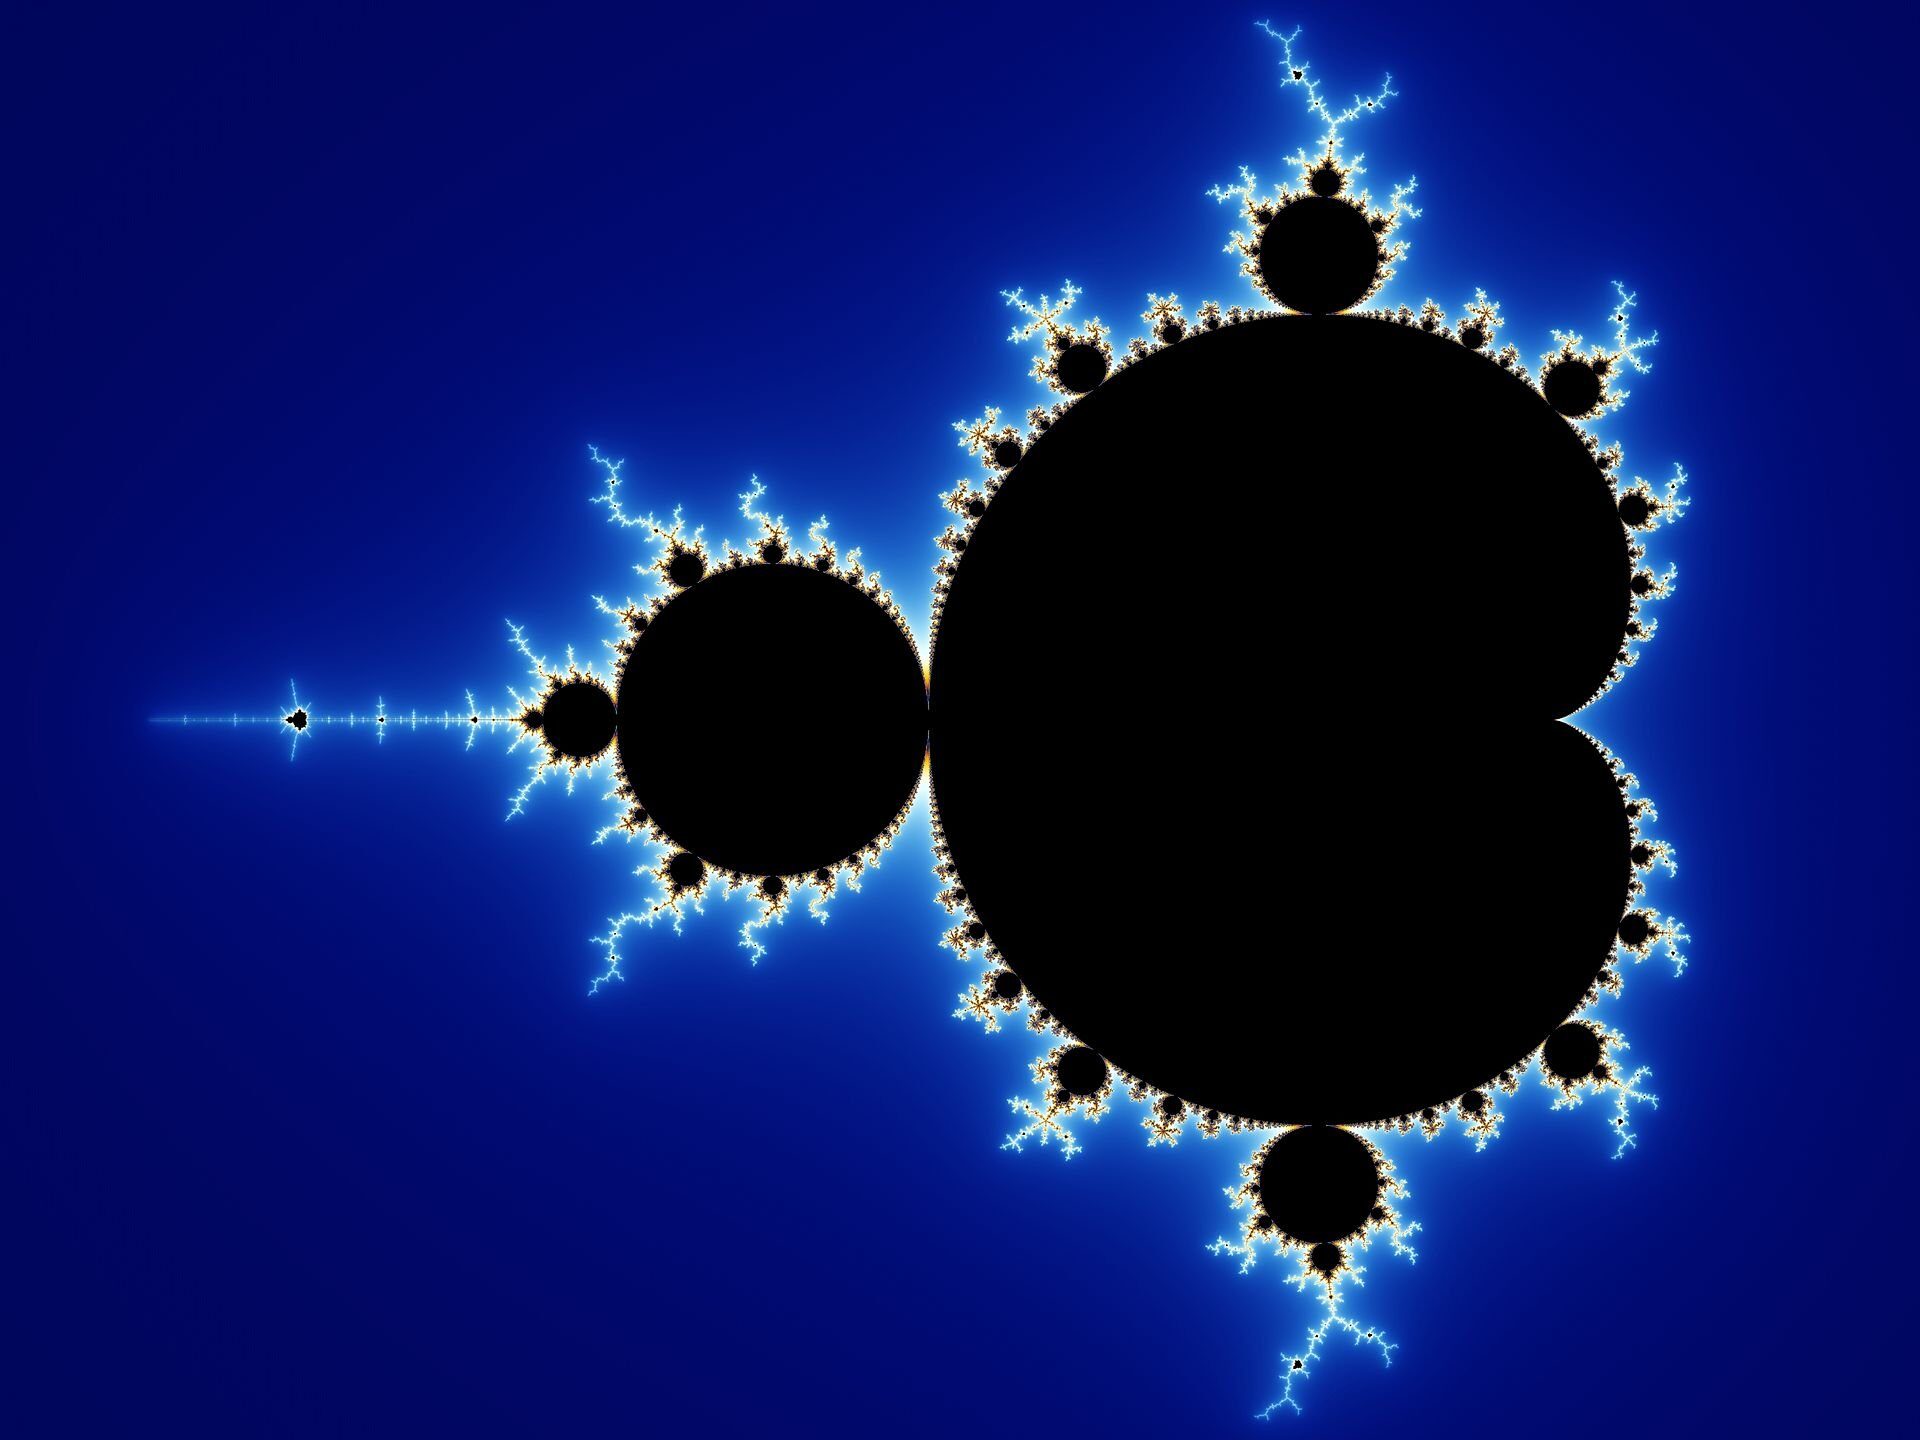 Mandelbrot set fractals